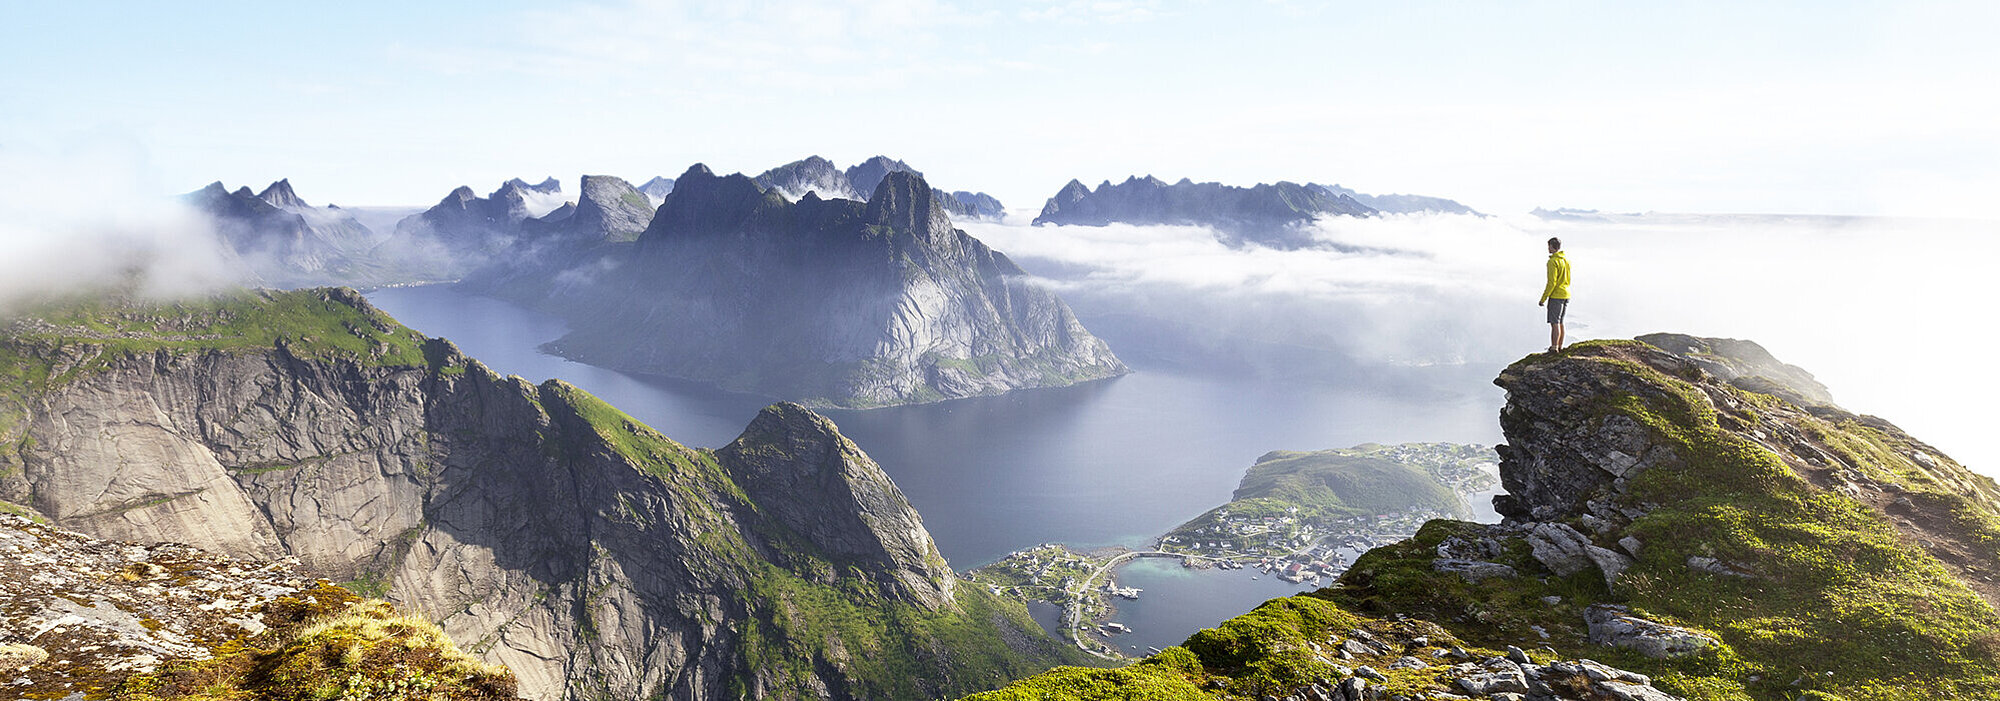 Entdecken Sie Norwegens Natur bei Ihrem Norwegen Urlaub - Wir haben die besten Tipps und Empfehlungen für Ihren Norwegen Urlaub.